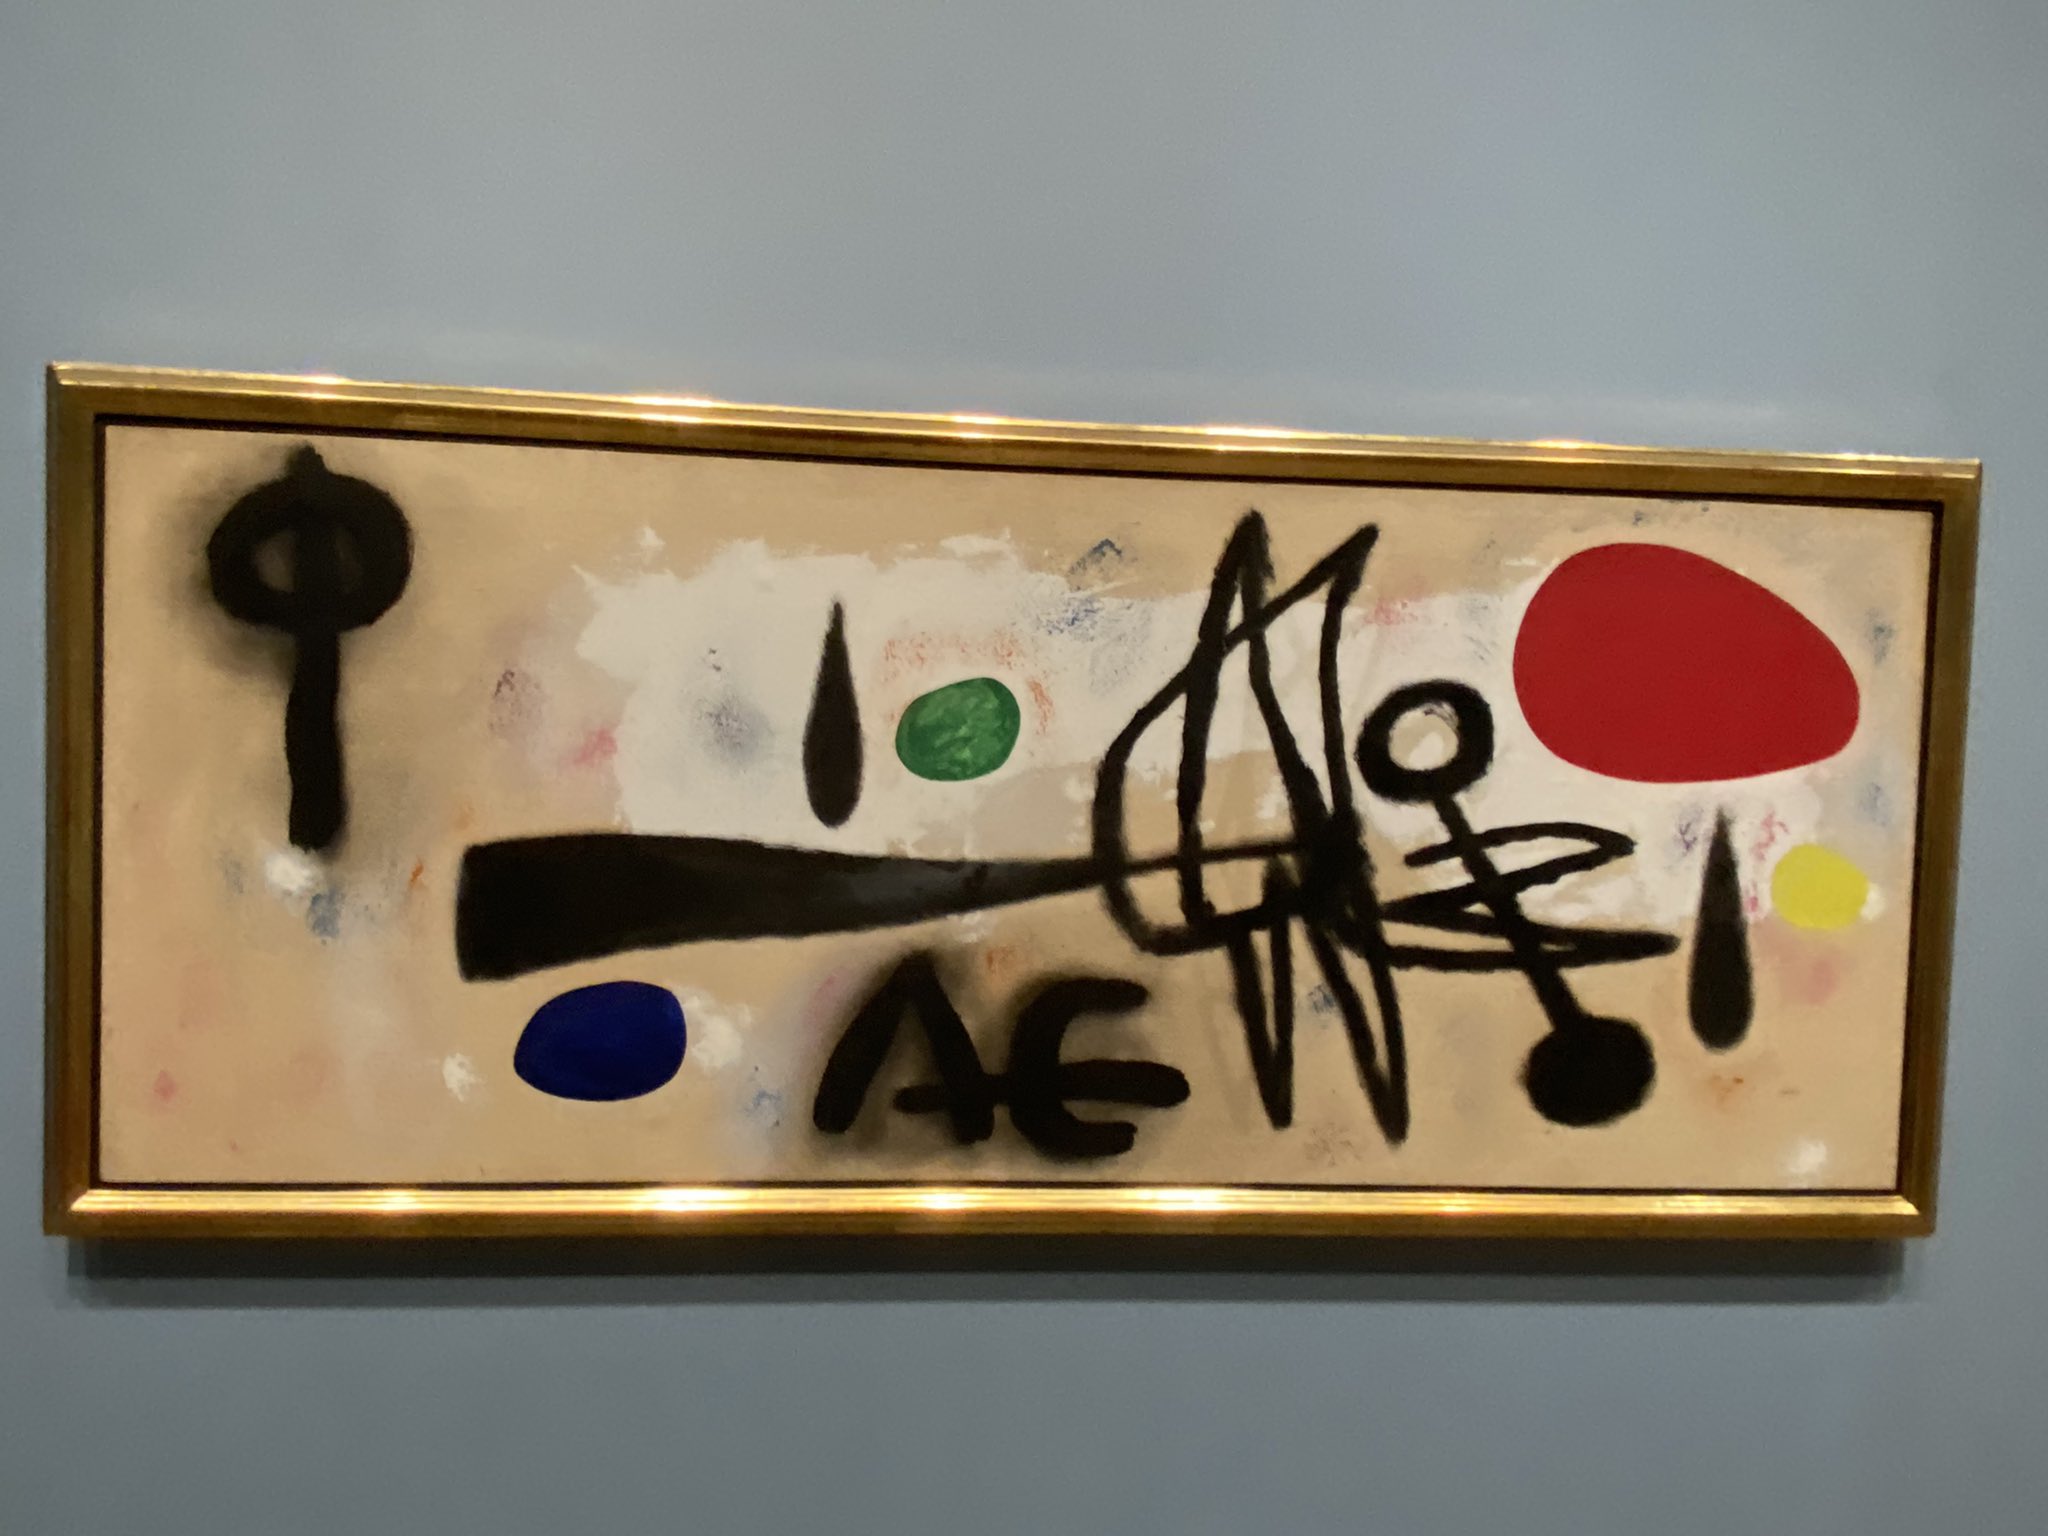 Kouichi Ishida 1枚目 ジャン フォートリエ 落書きみたいなやつな サイ トゥオンブリーと同じ趣向だと思う 2枚目は田中敦子 アーティゾンも持ってたんだな 横浜美術館も国立近代美術館にもある 3枚目はユービーナ ナムビジン アボリジニー